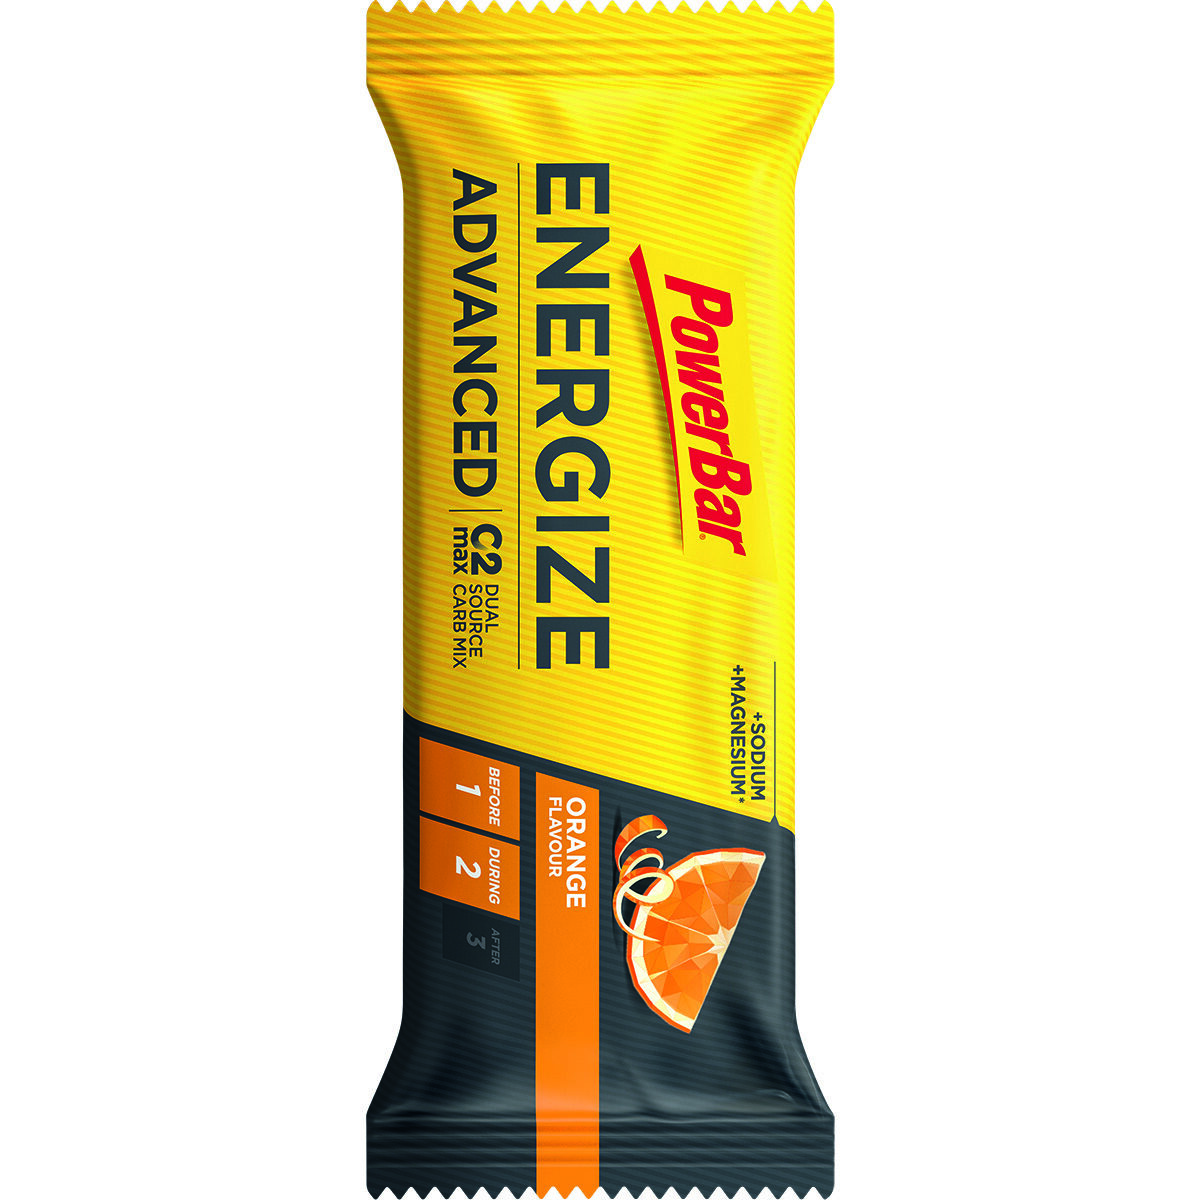 Energize-Advanced-Bar-Orange-1-rotated-1.jpg